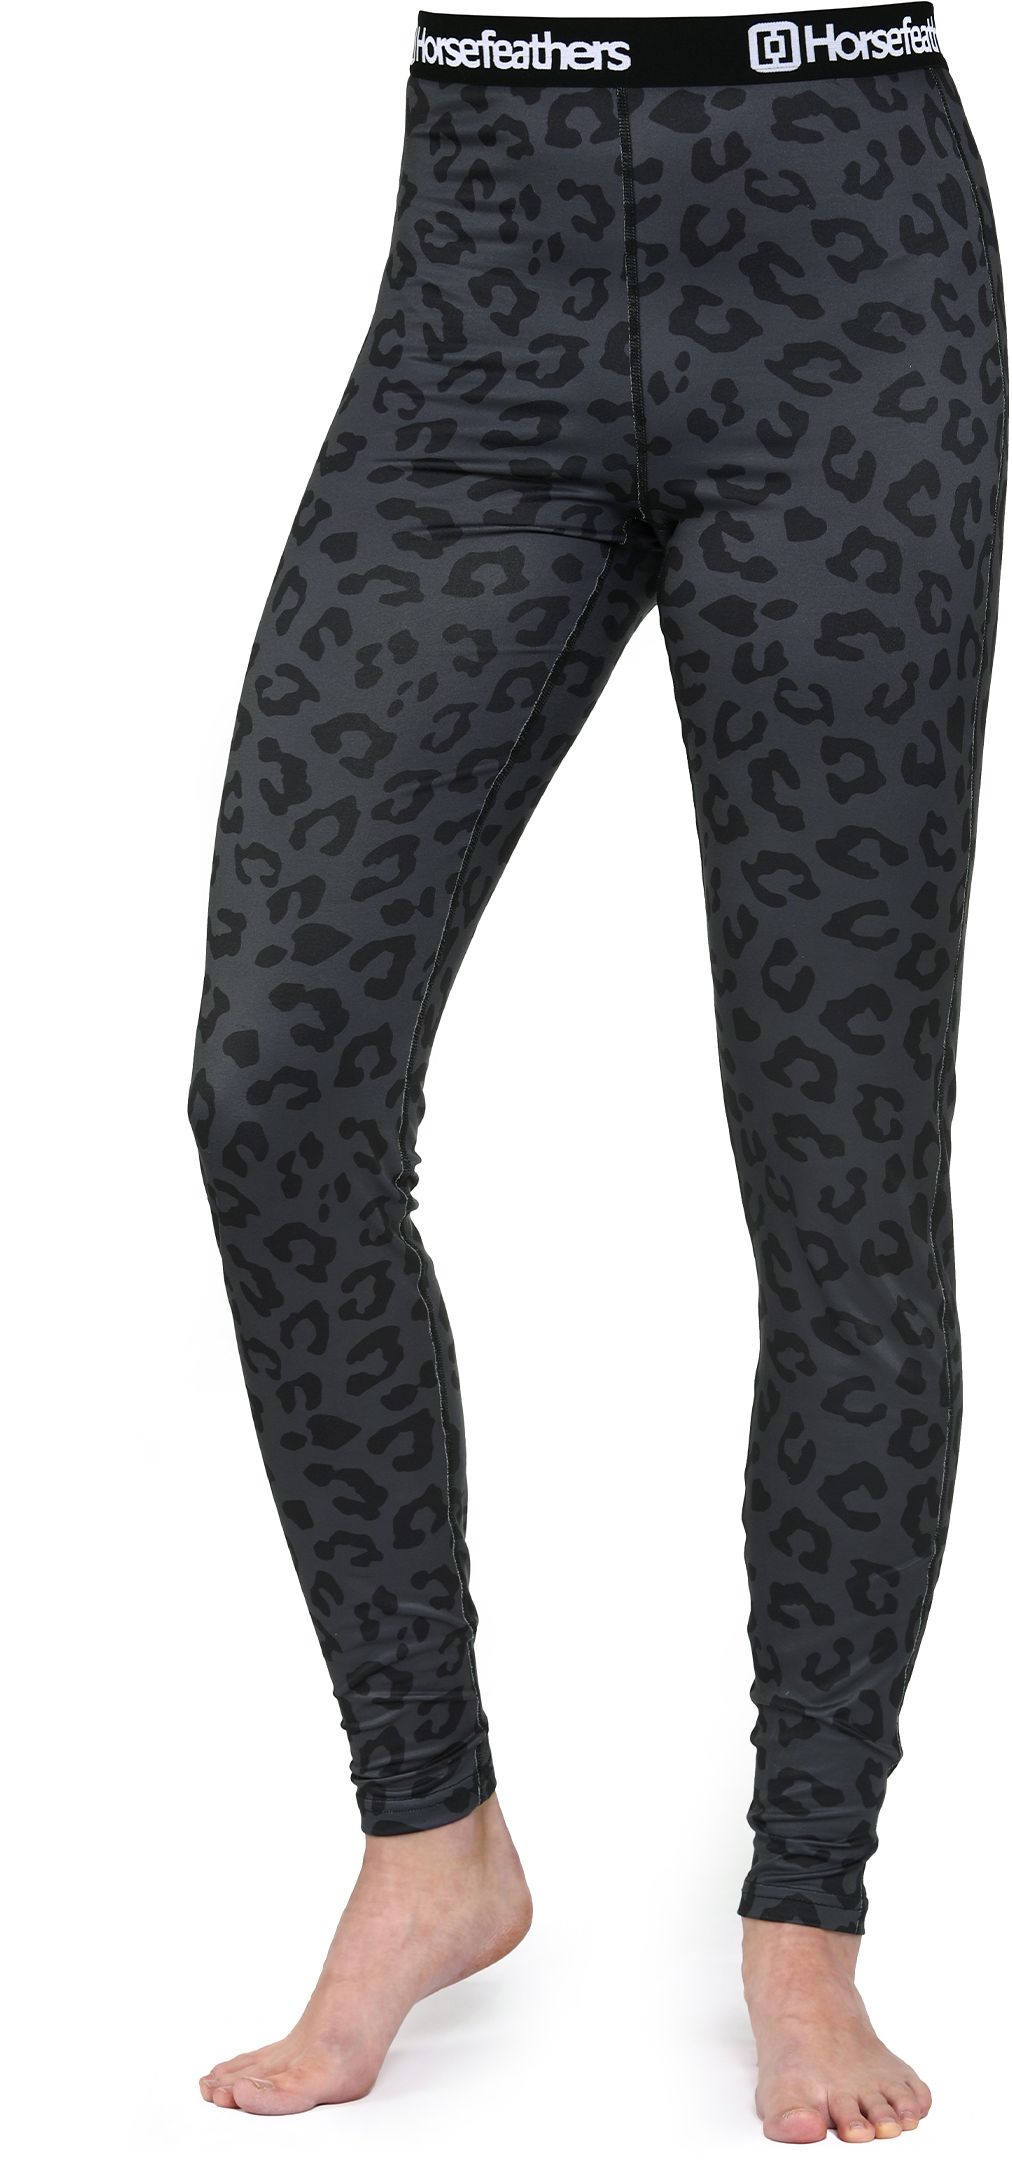 dámské termoprádlo - kalhoty HORSEFEATHERS MIRRA PANTS Black Cheetah